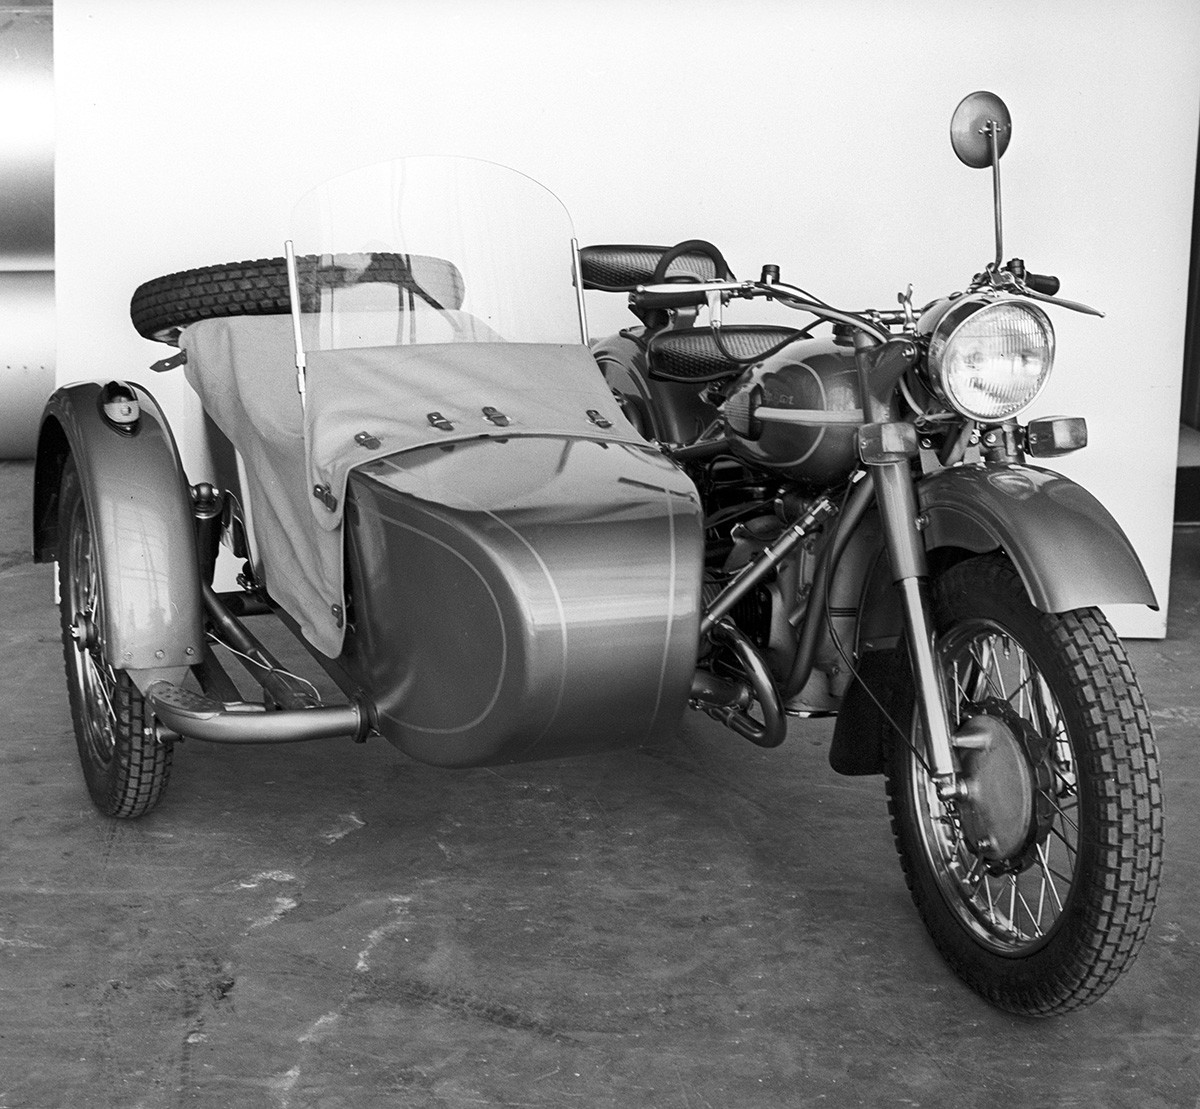 Sepeda motor 'Ural-3 M66', yang diproduksi oleh pabrik sepeda motor Irbit.